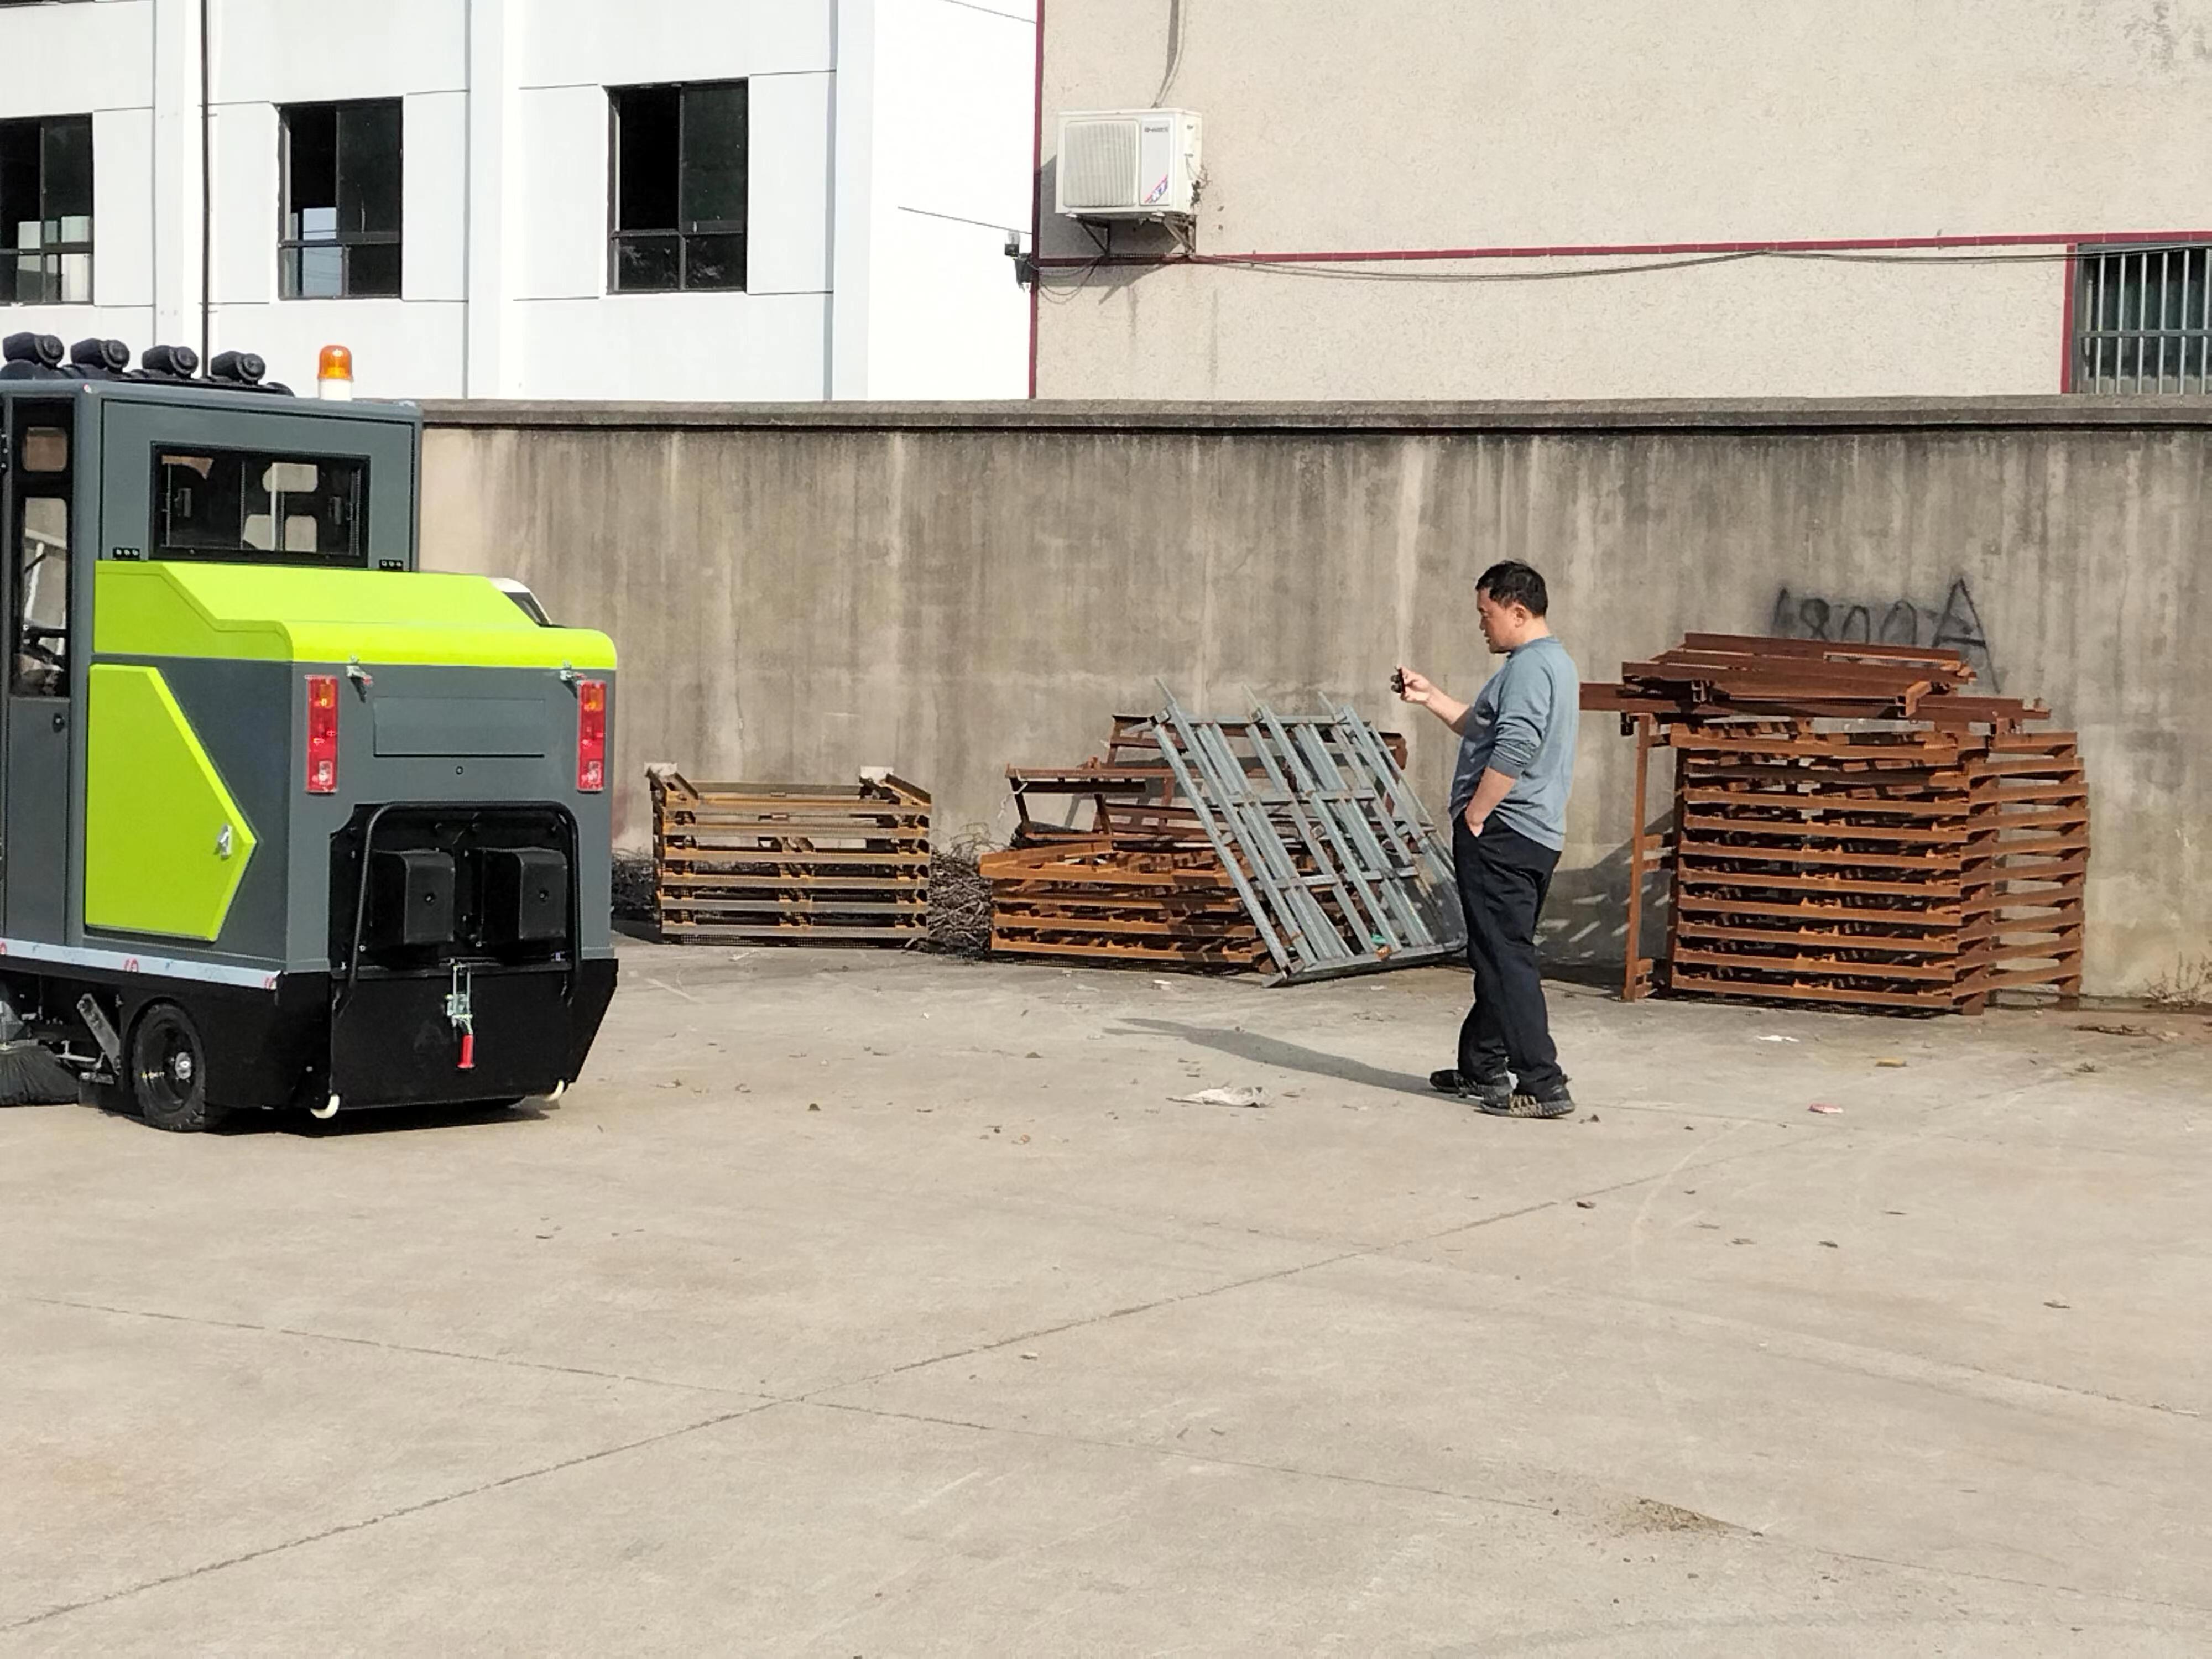 驾驶室电动清扫车：提升社区清洁度的利器